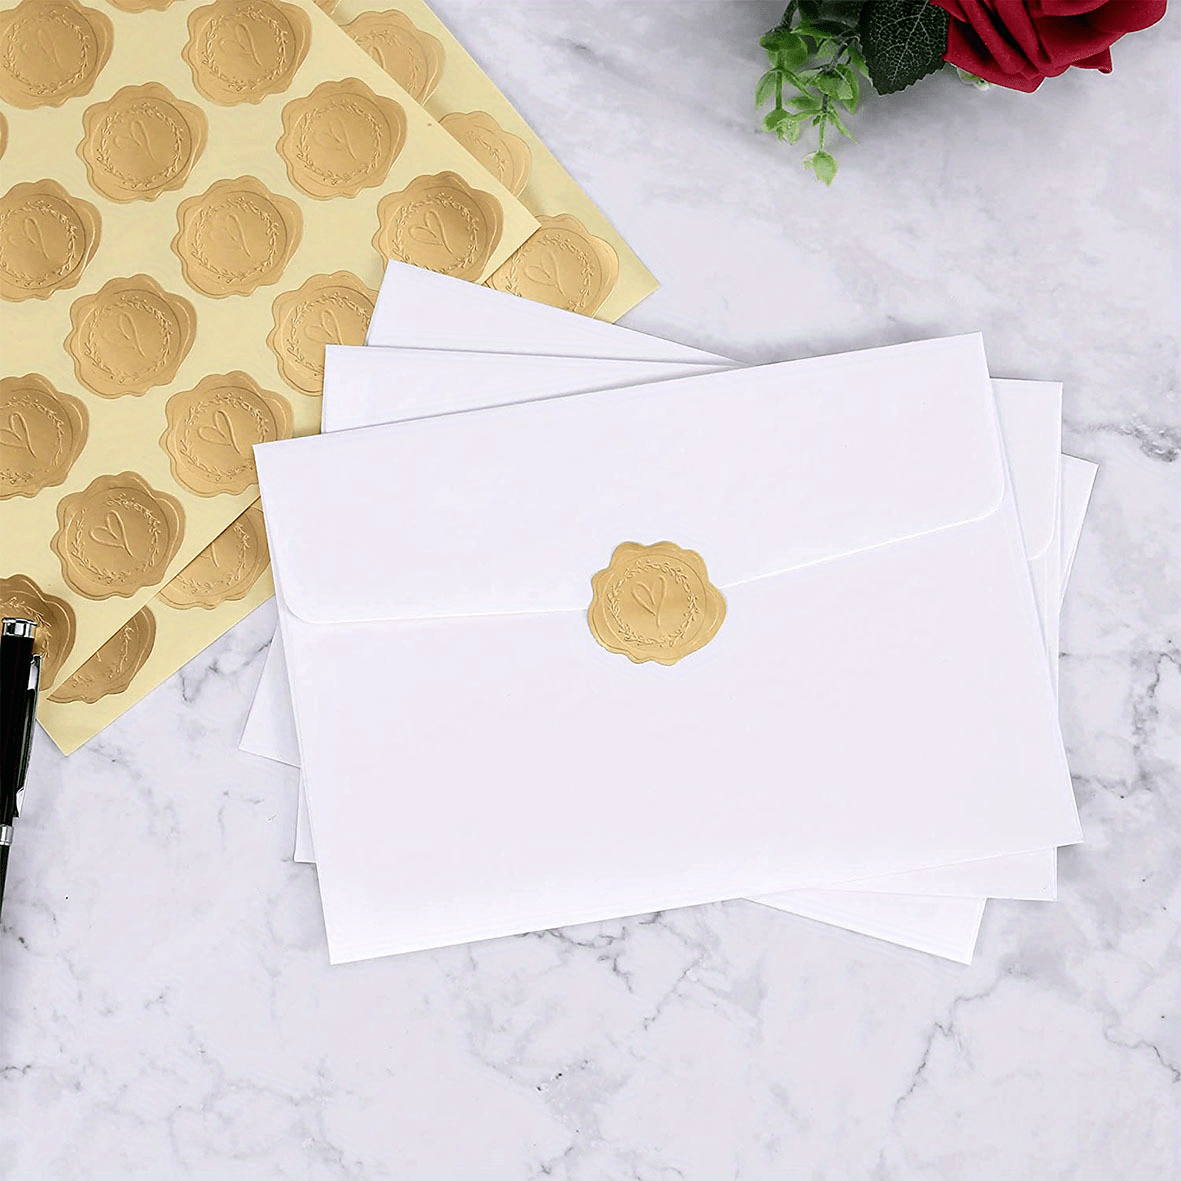 100 pièces de sceaux de cire dorée pour enveloppes, autocollants décoratifs  pour cartes de vœux et invitations de fête commémoratives (4 feuilles, 25